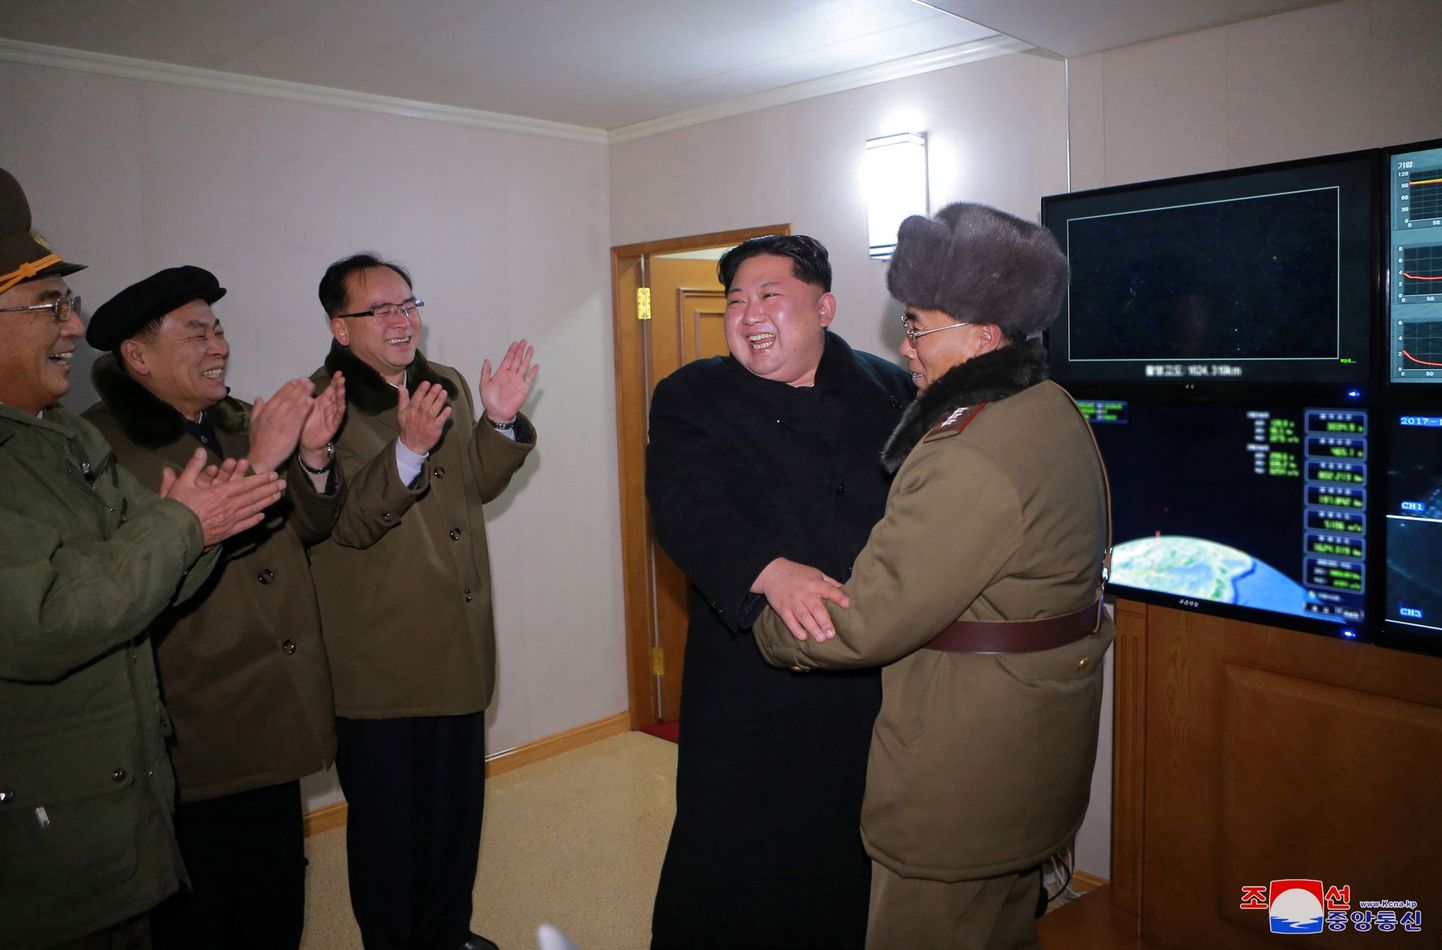 Põhja-Korea riikliku uudisteagentuuri teatel tähistab riigi liider Kim Jong-un nende avaldatud fotol sõjaväelastega raketi Hwasong-15 edukat katsetust.